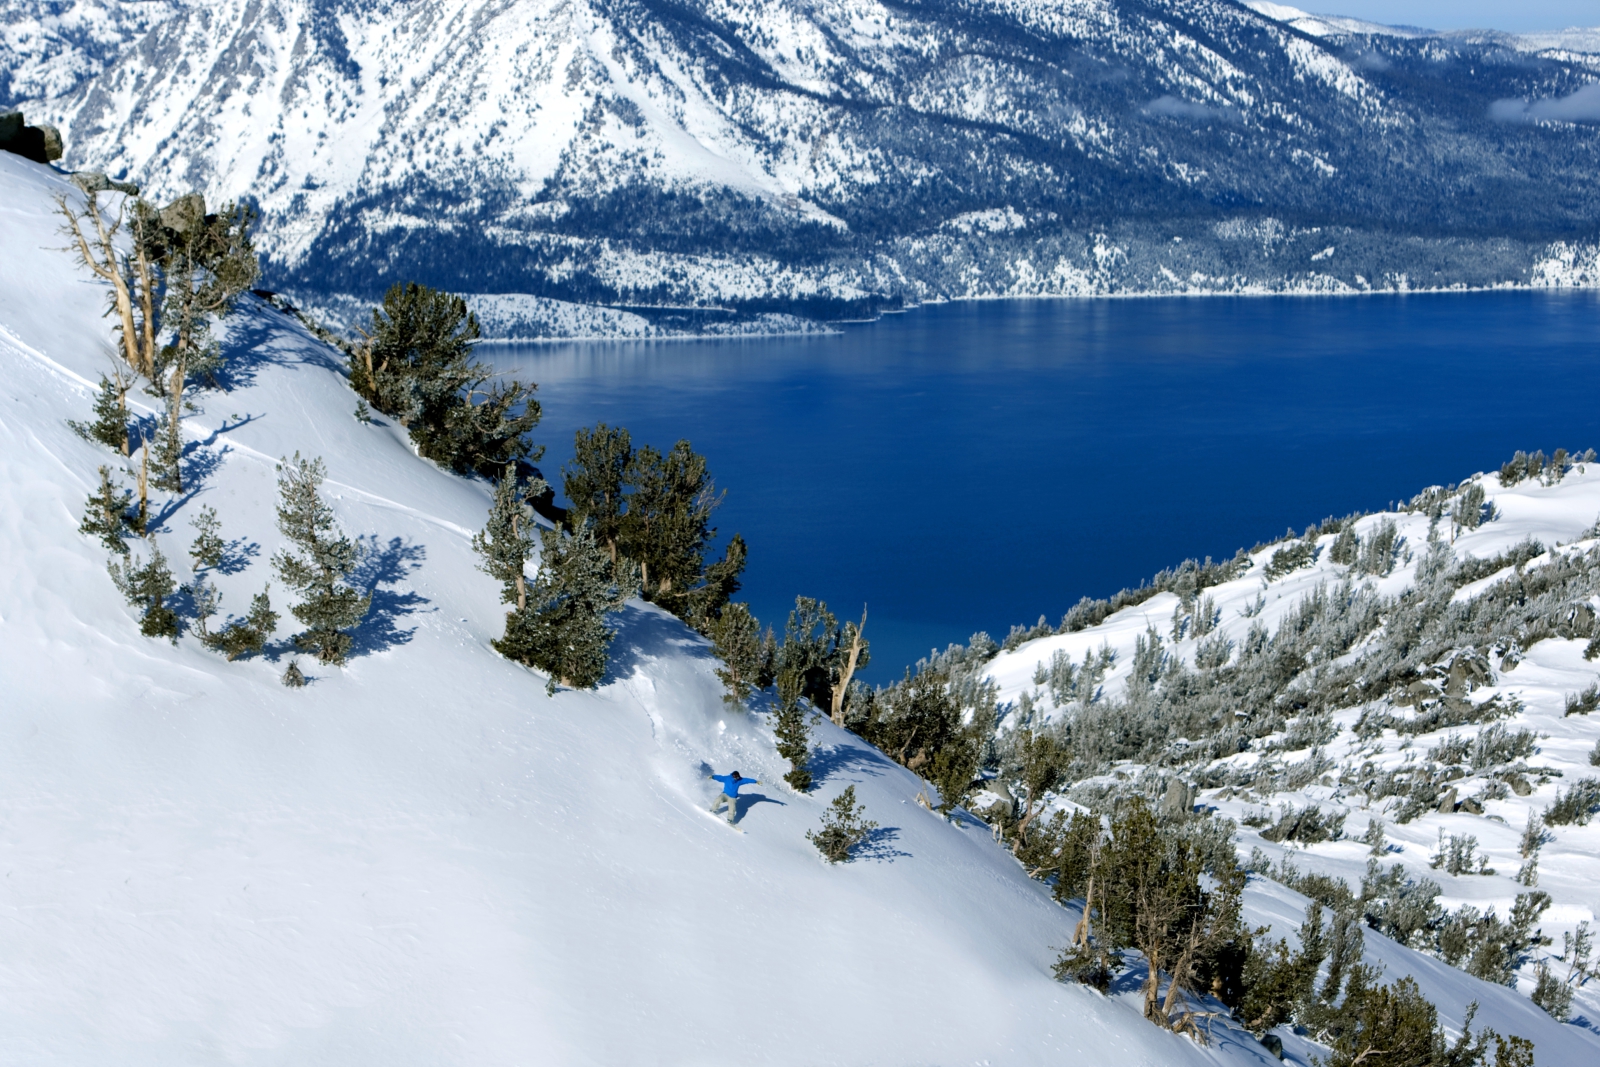 Hódeszkás, háttérben a Tahoe tóval - Fotó: Vail Resorts Inc